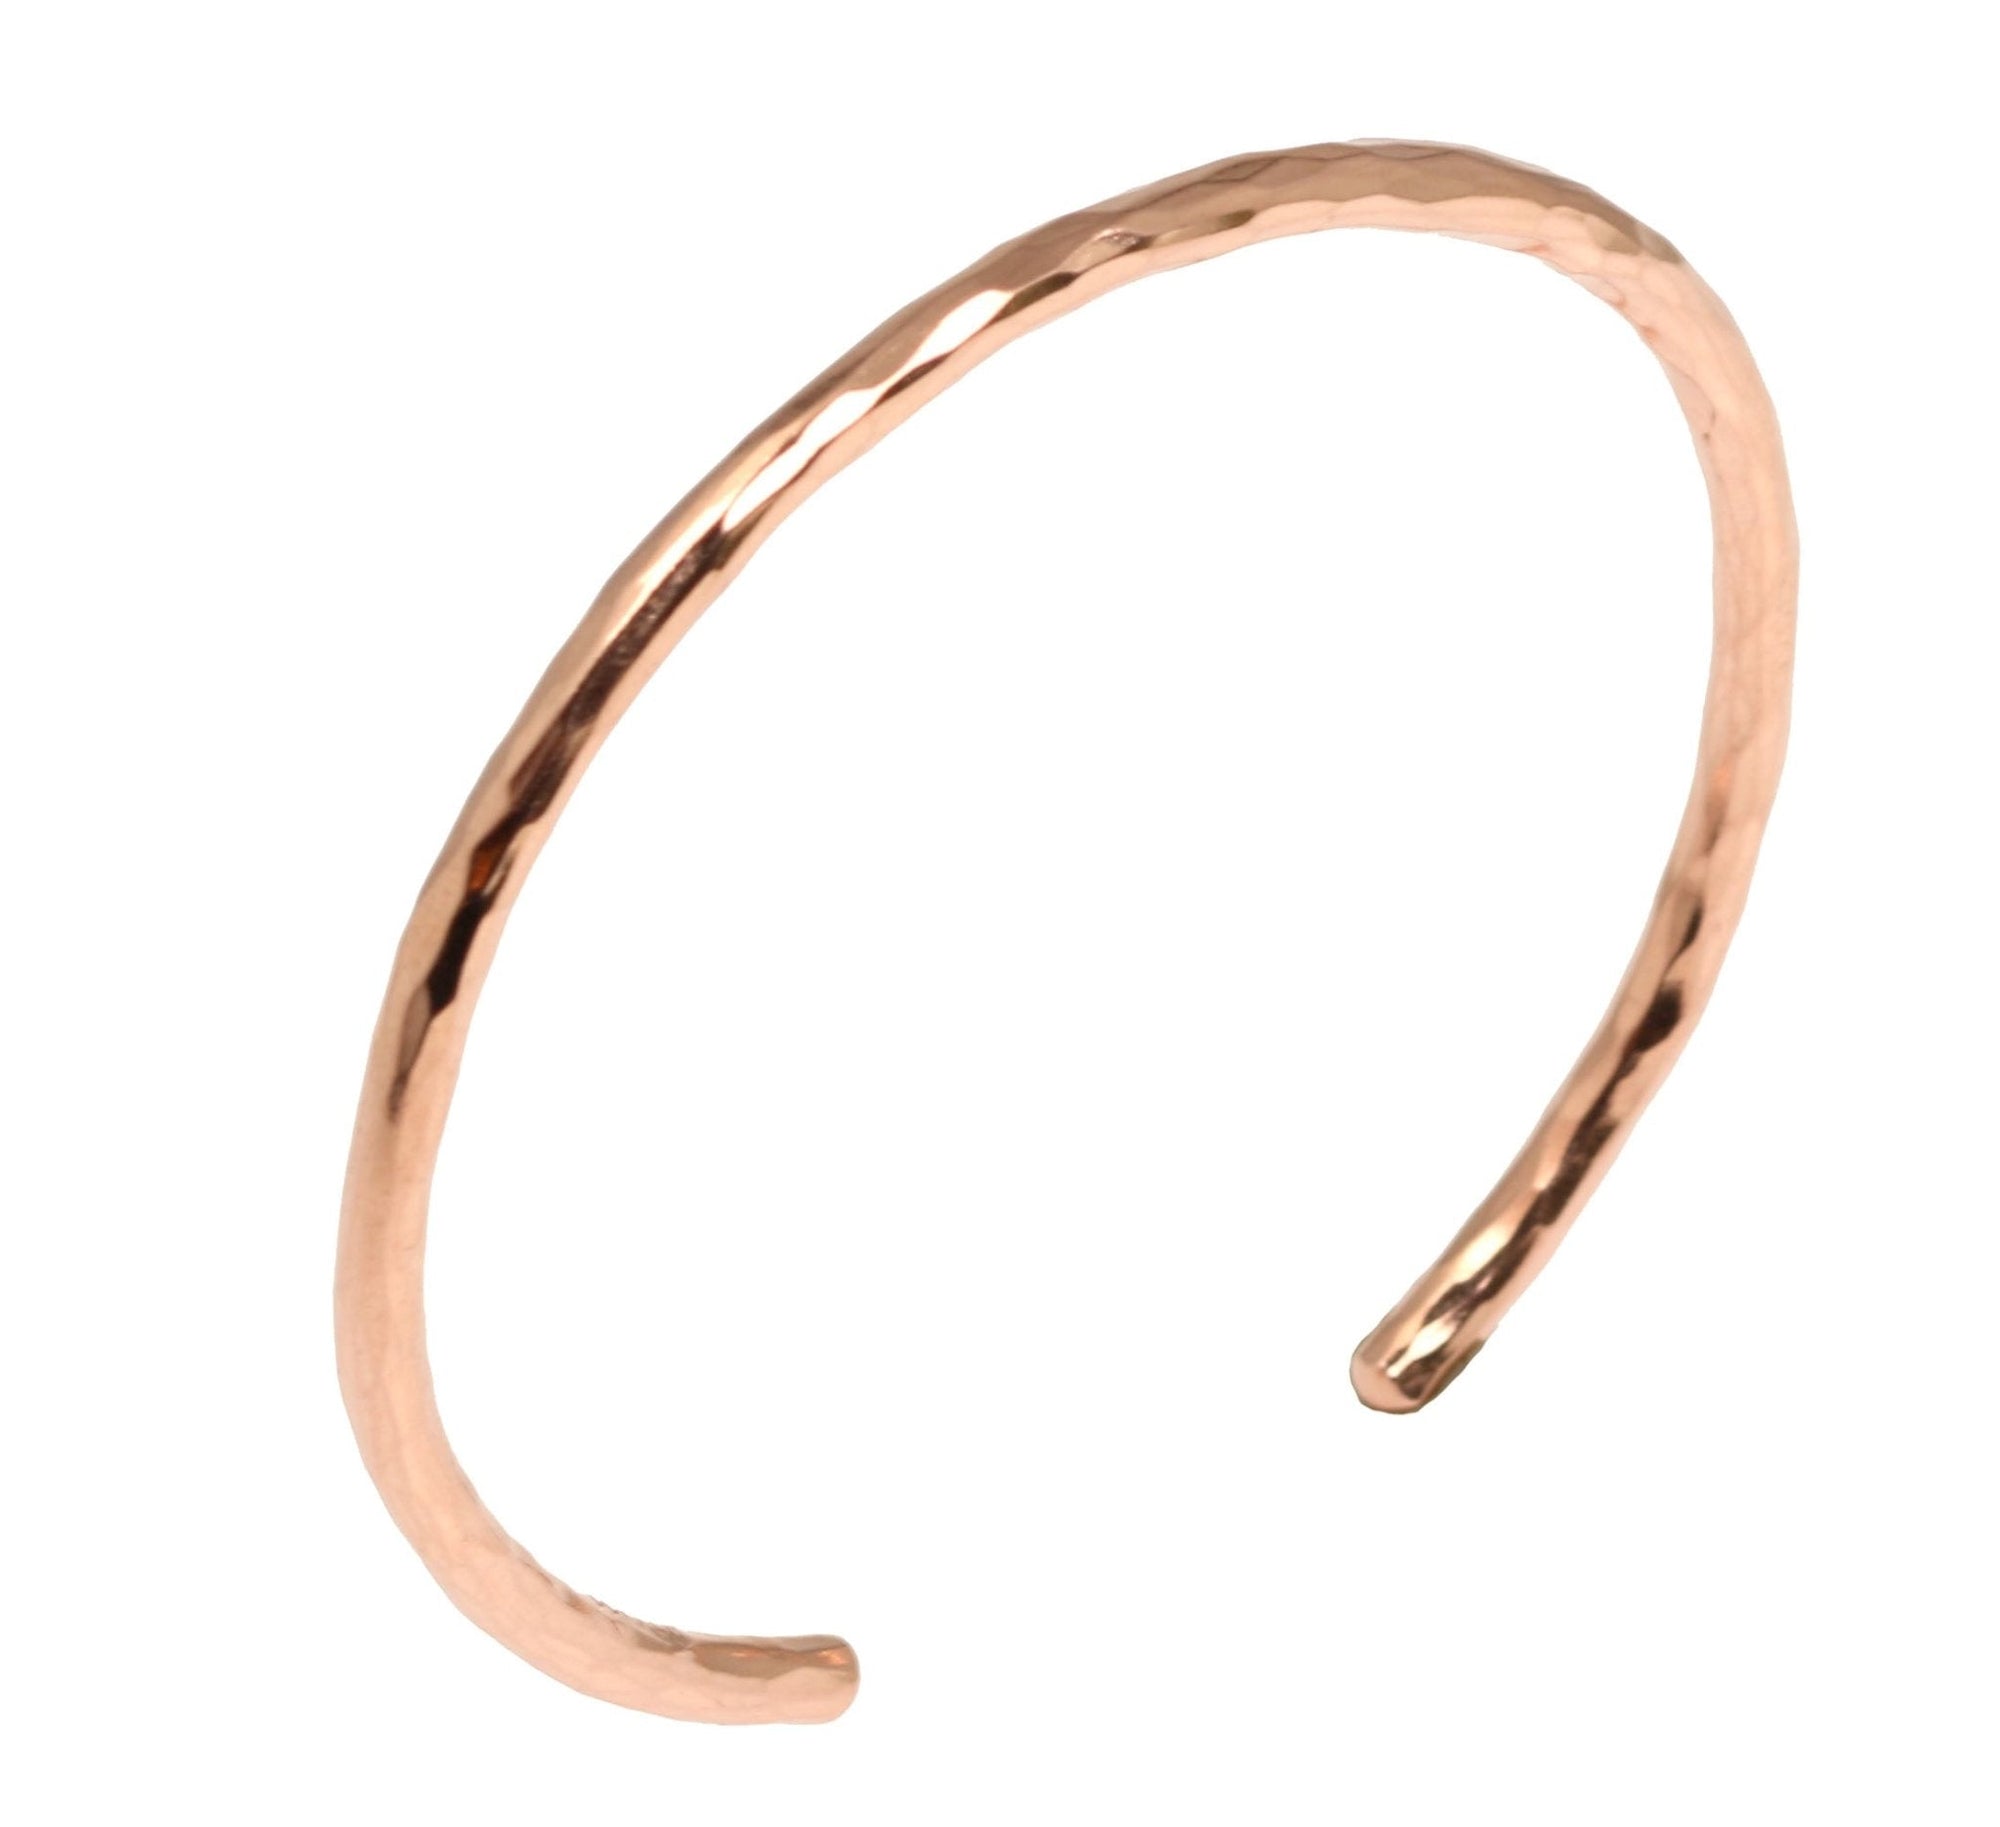 3mm Wide Hammered Copper Cuff Bracelet - Solid Copper Cuff